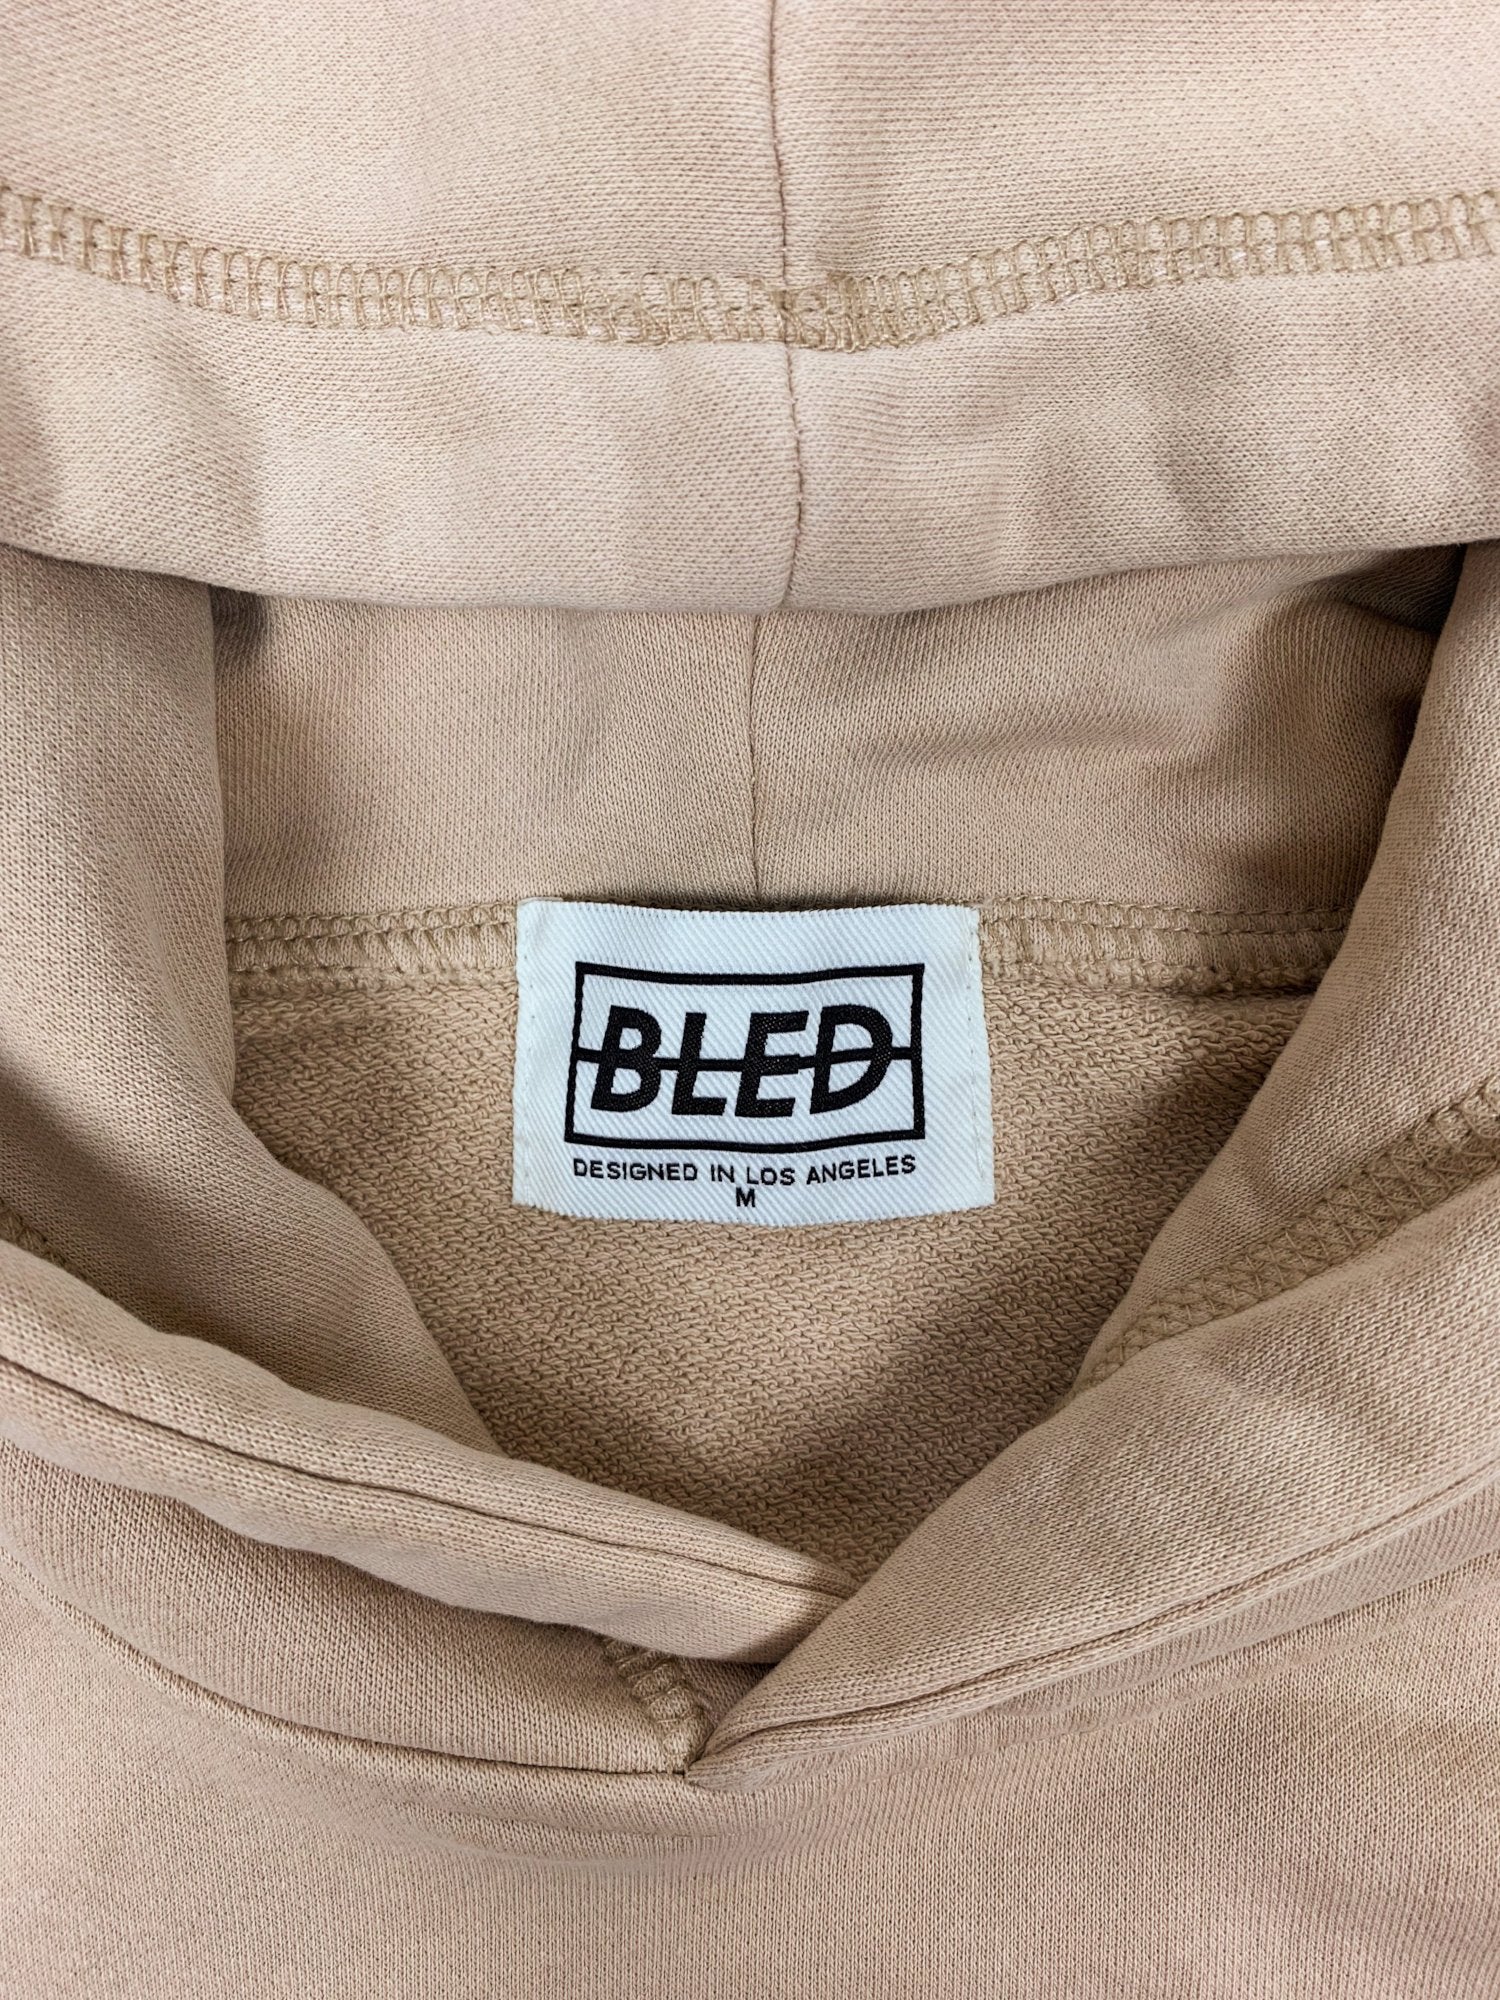 bled clothing bledwear hoodie los angeles hype streetwear